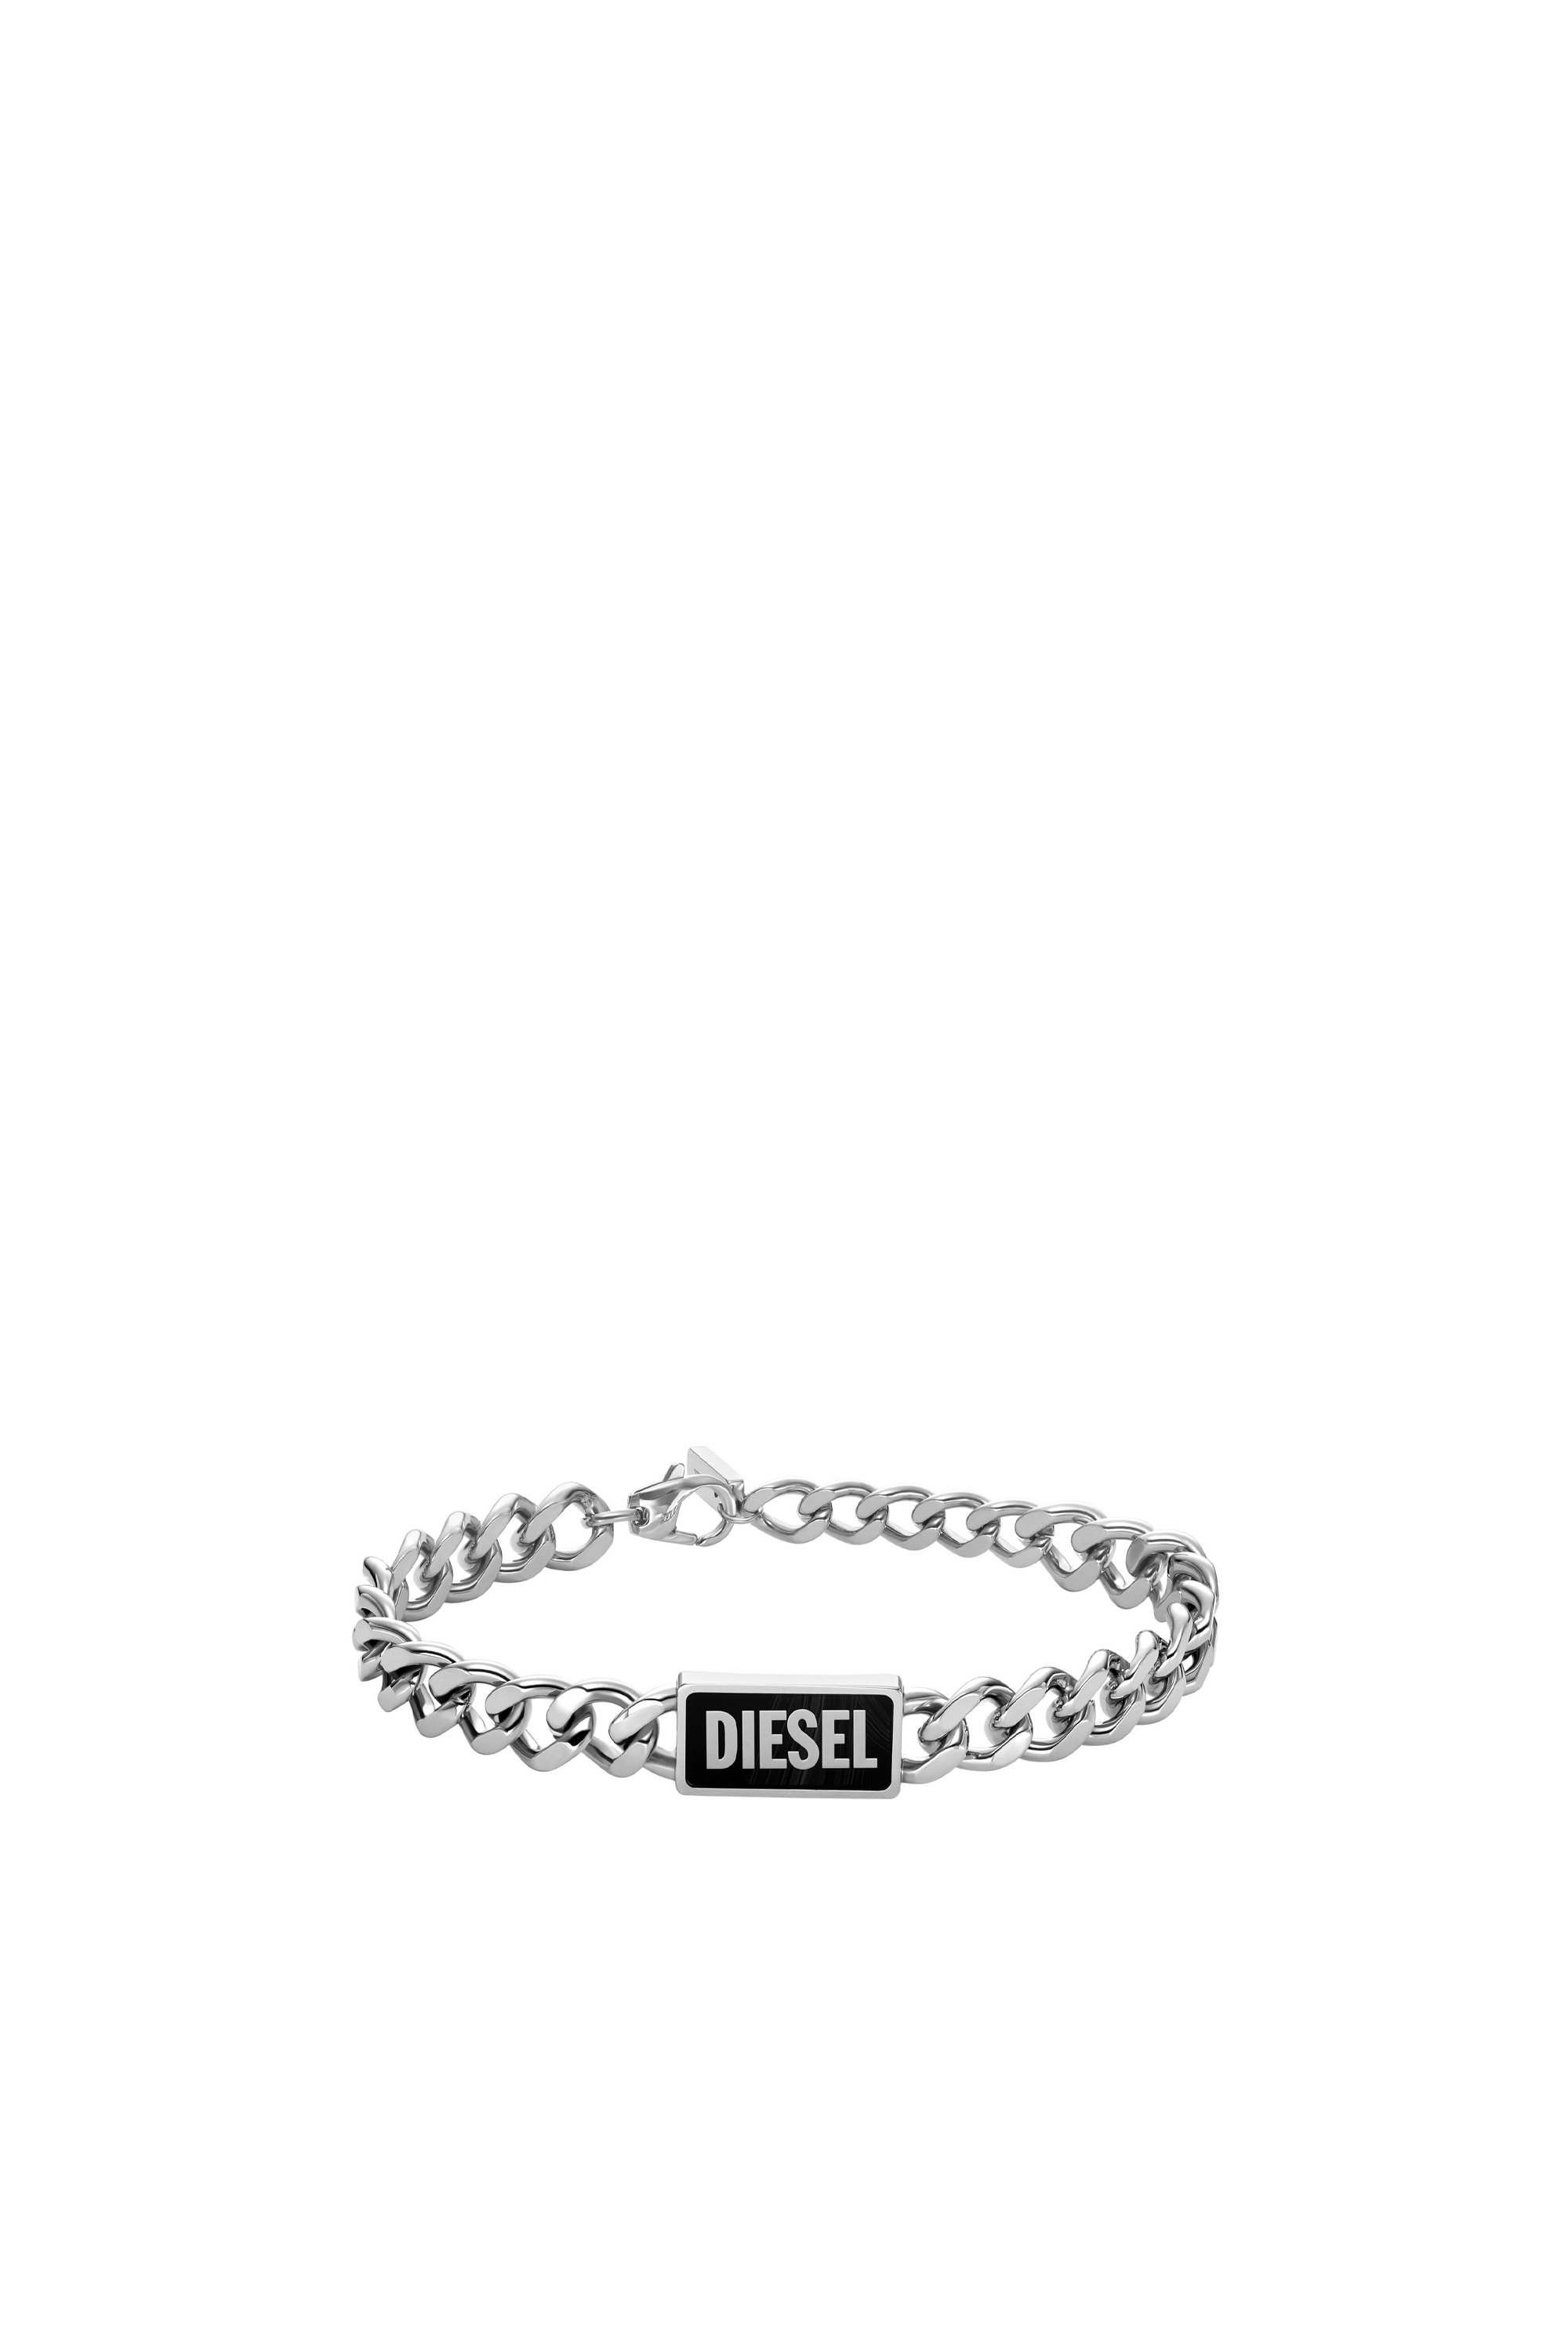 Diesel - DX1513, Mixte Bracelet ID avec agate noire in Gris argenté - Image 1